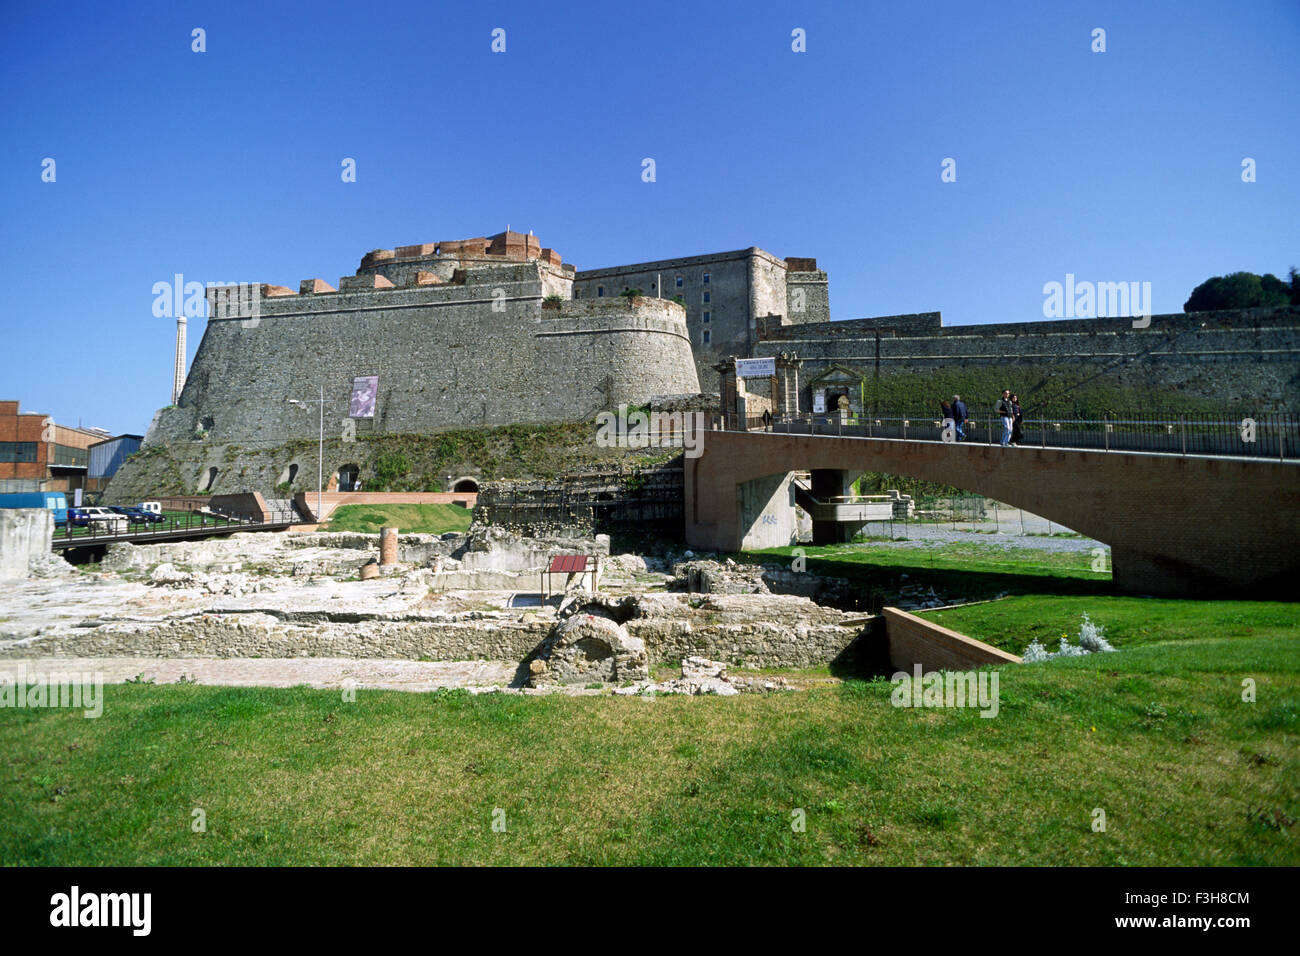 Italia, Liguria, Savona, fortezza di Priamar e scavi archeologici Foto Stock